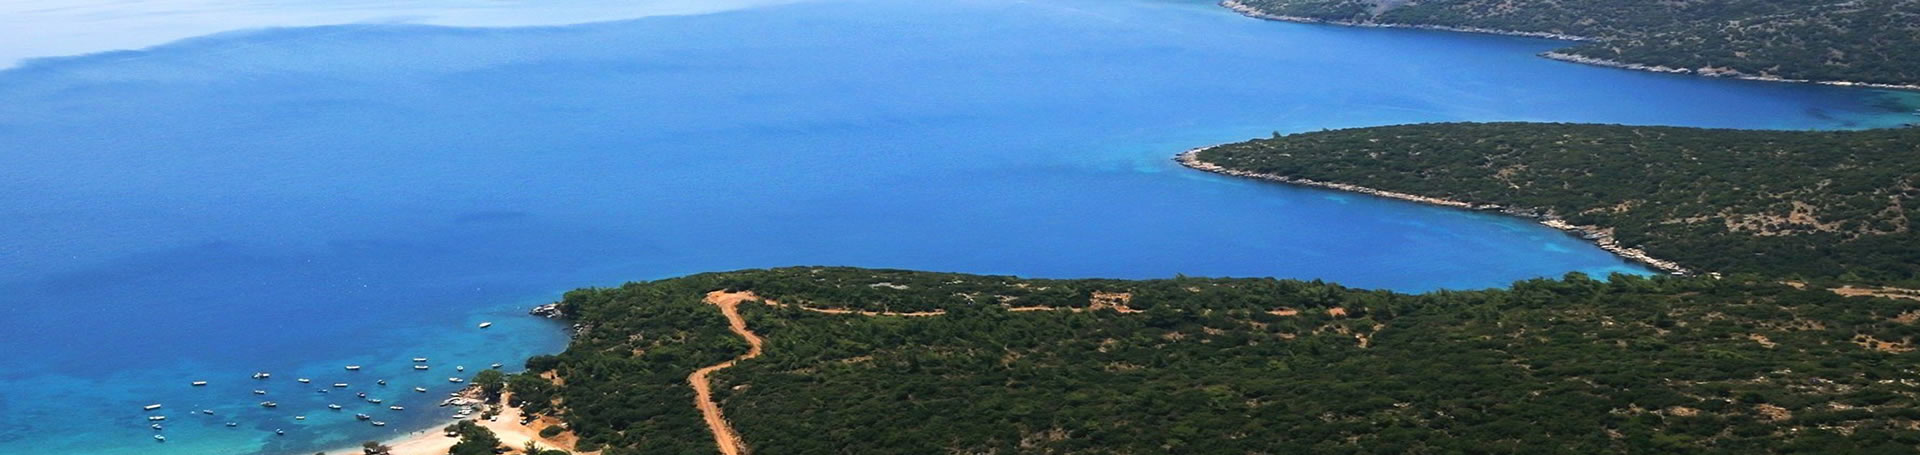 جزیره زیبای ساموس